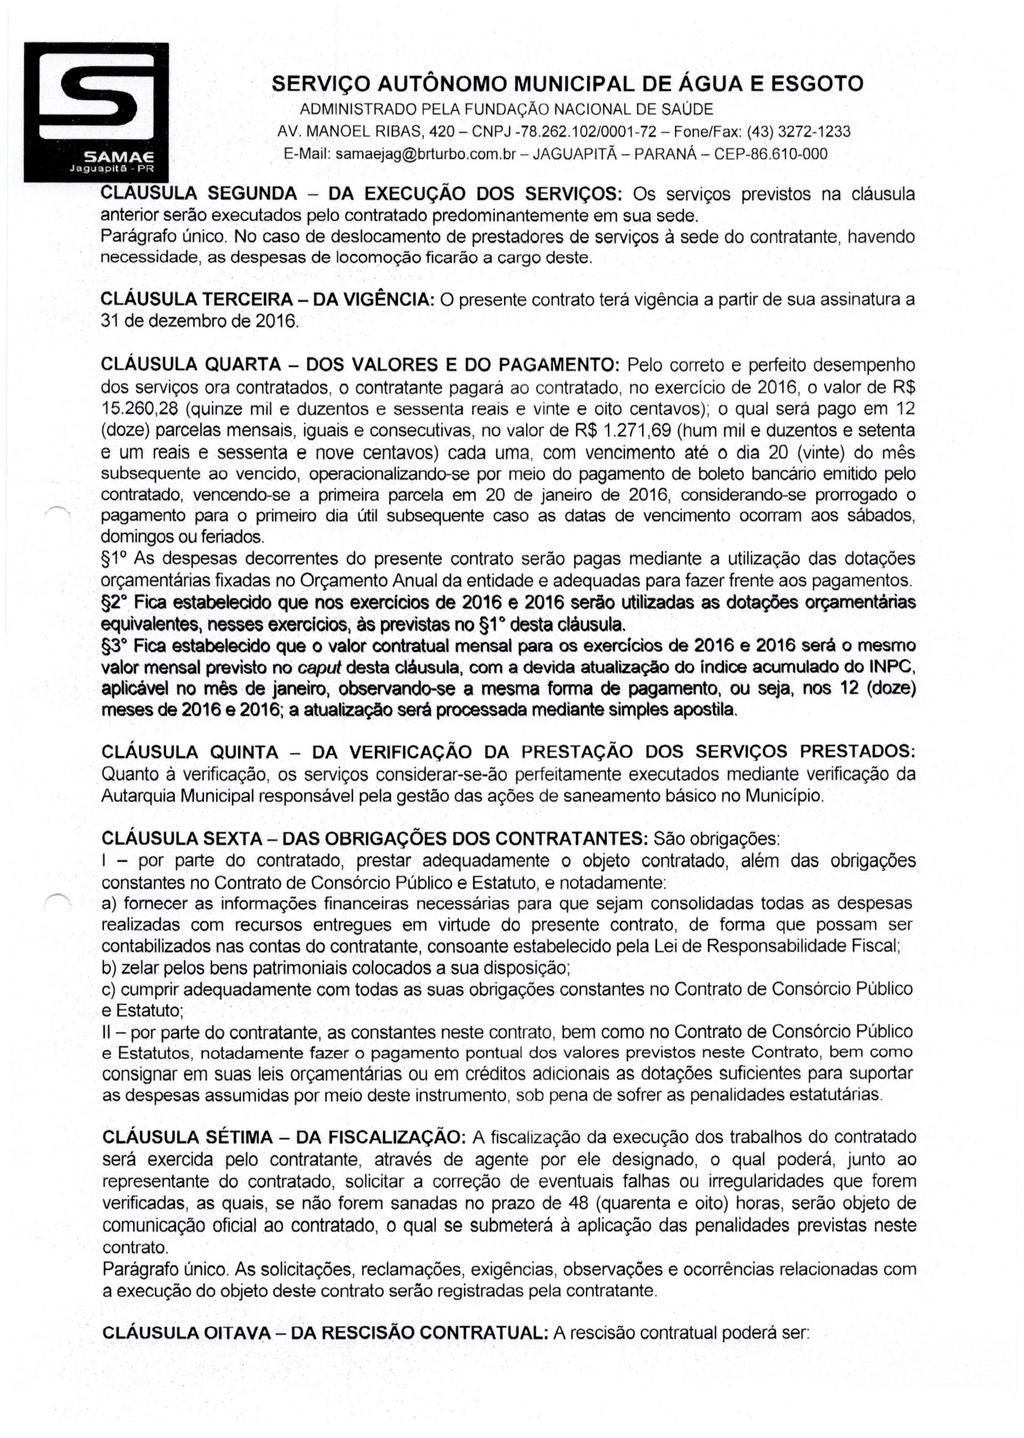 ADMINISTRADO PELA FUNDAÇAO NACIONAL DE SAÚDE E-Mail: samaejag@brturbo.com.br- JAGUAPITÃ - PARANÁ - CEP-86.